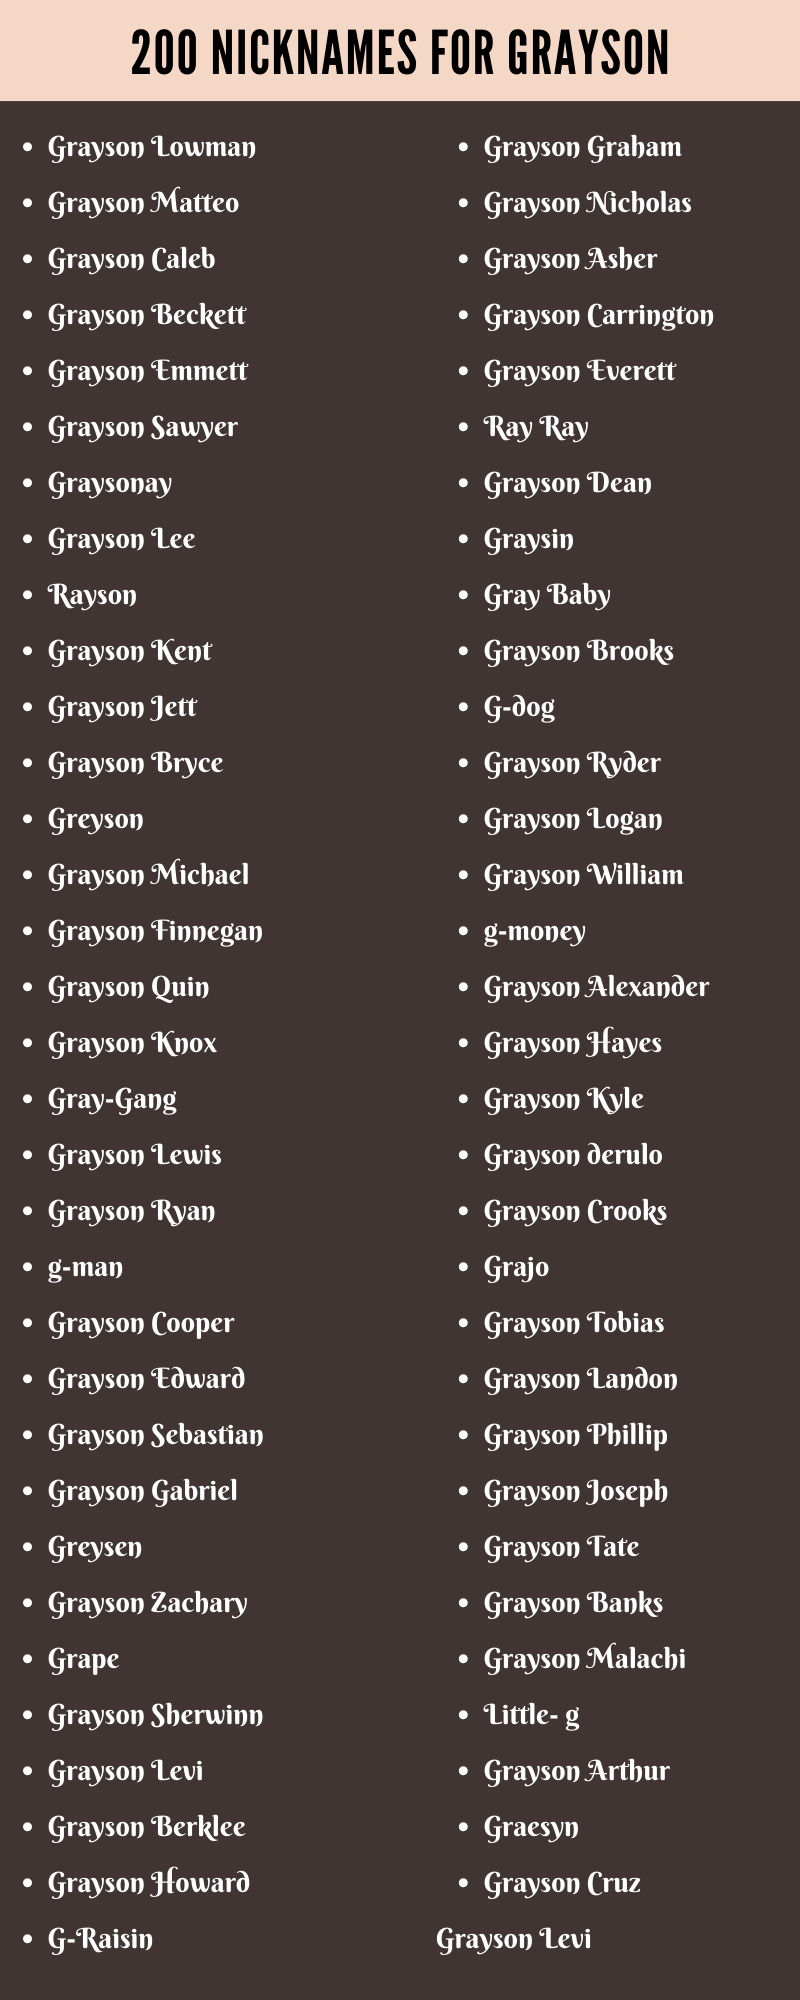 nicknames for grayson